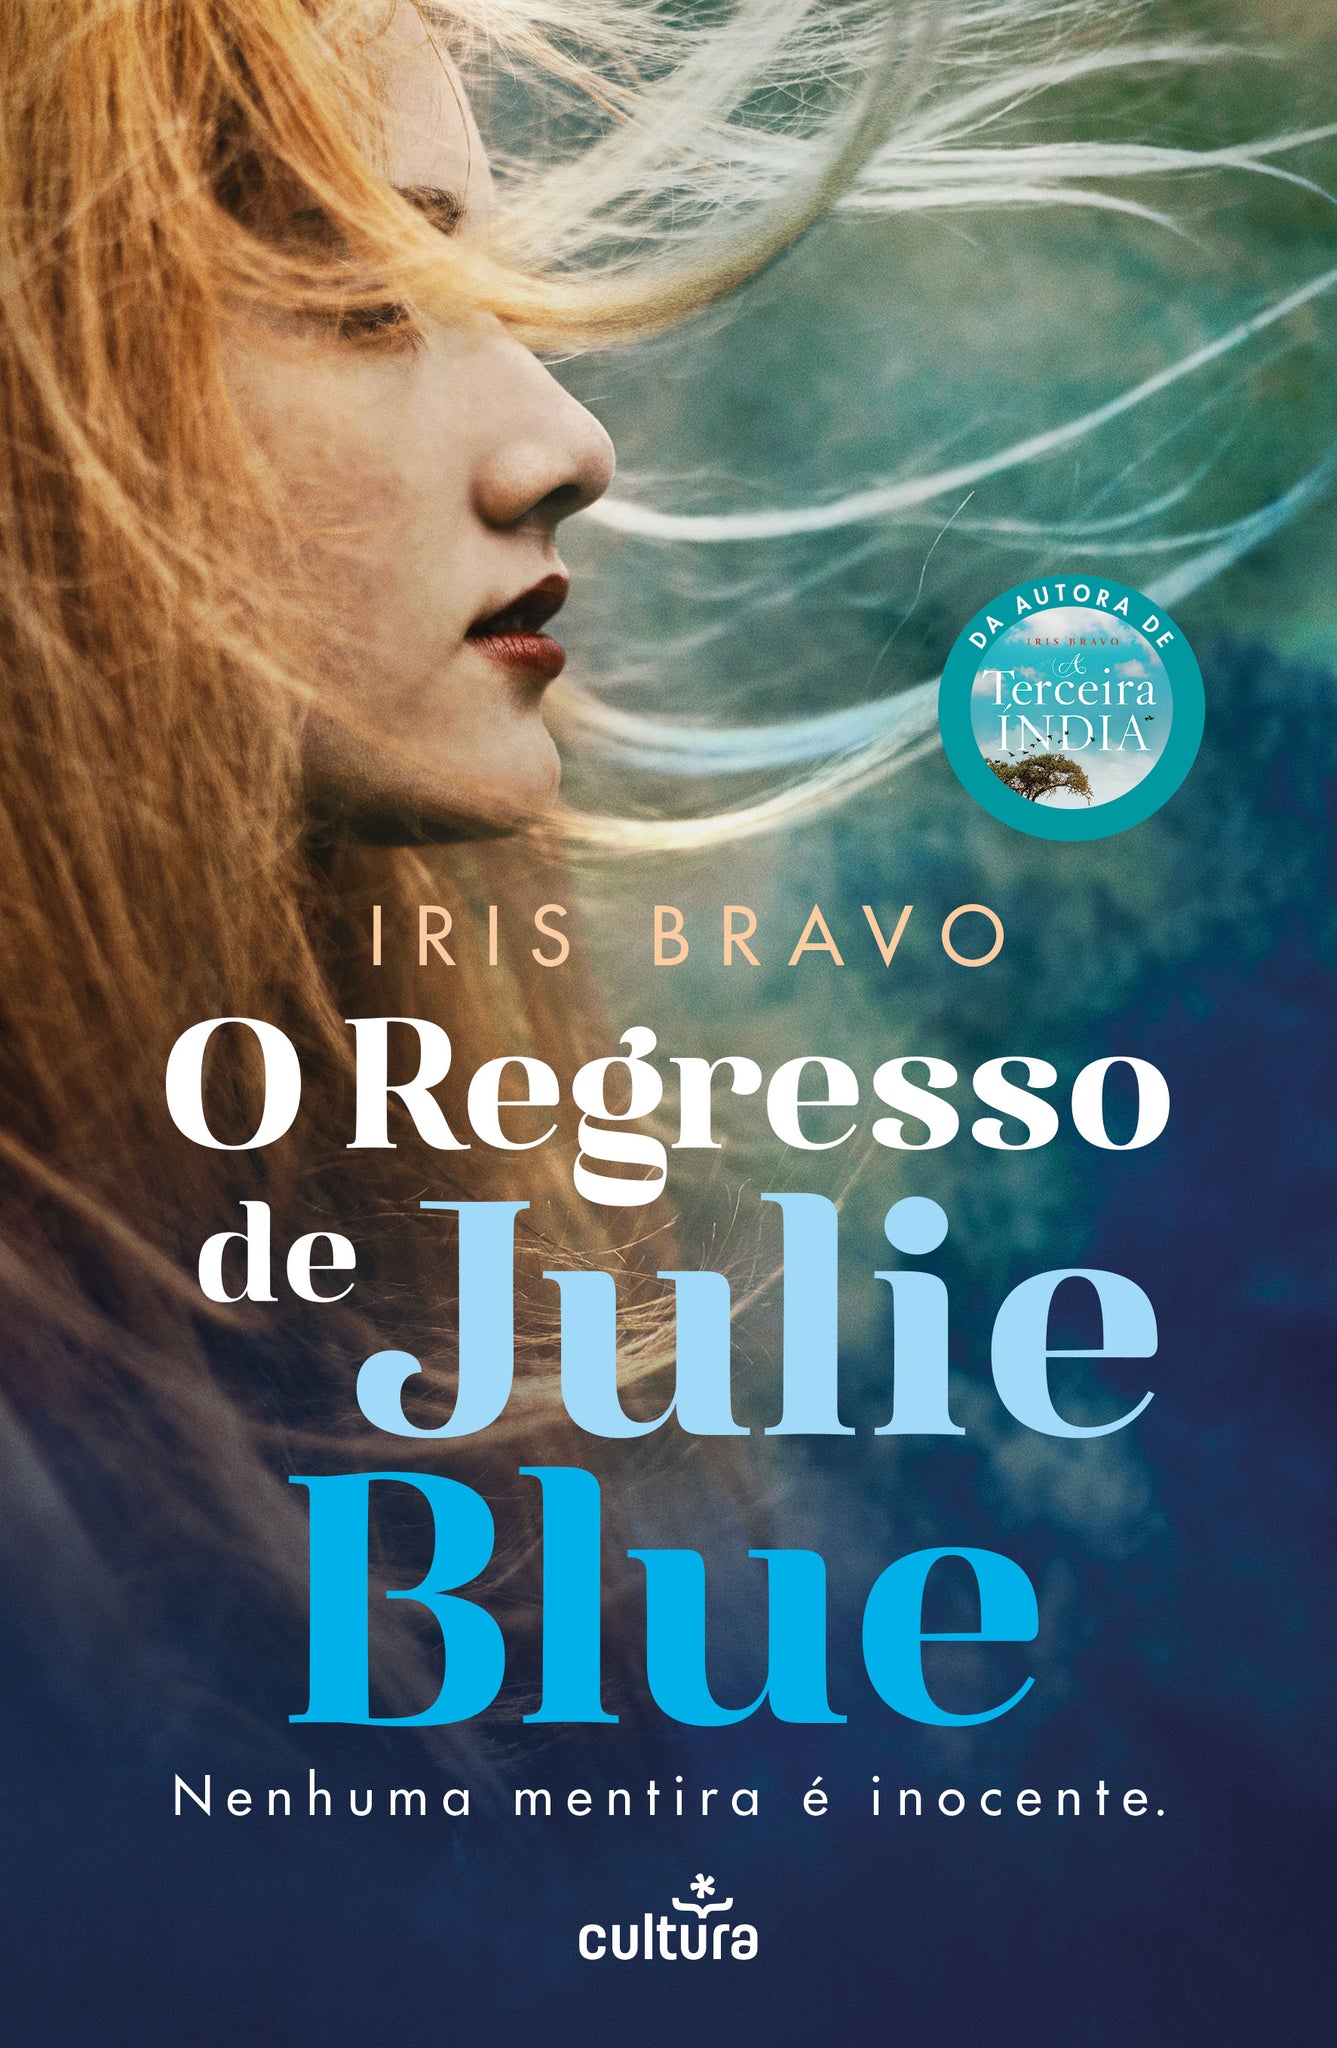 O Regresso de Julie Blue